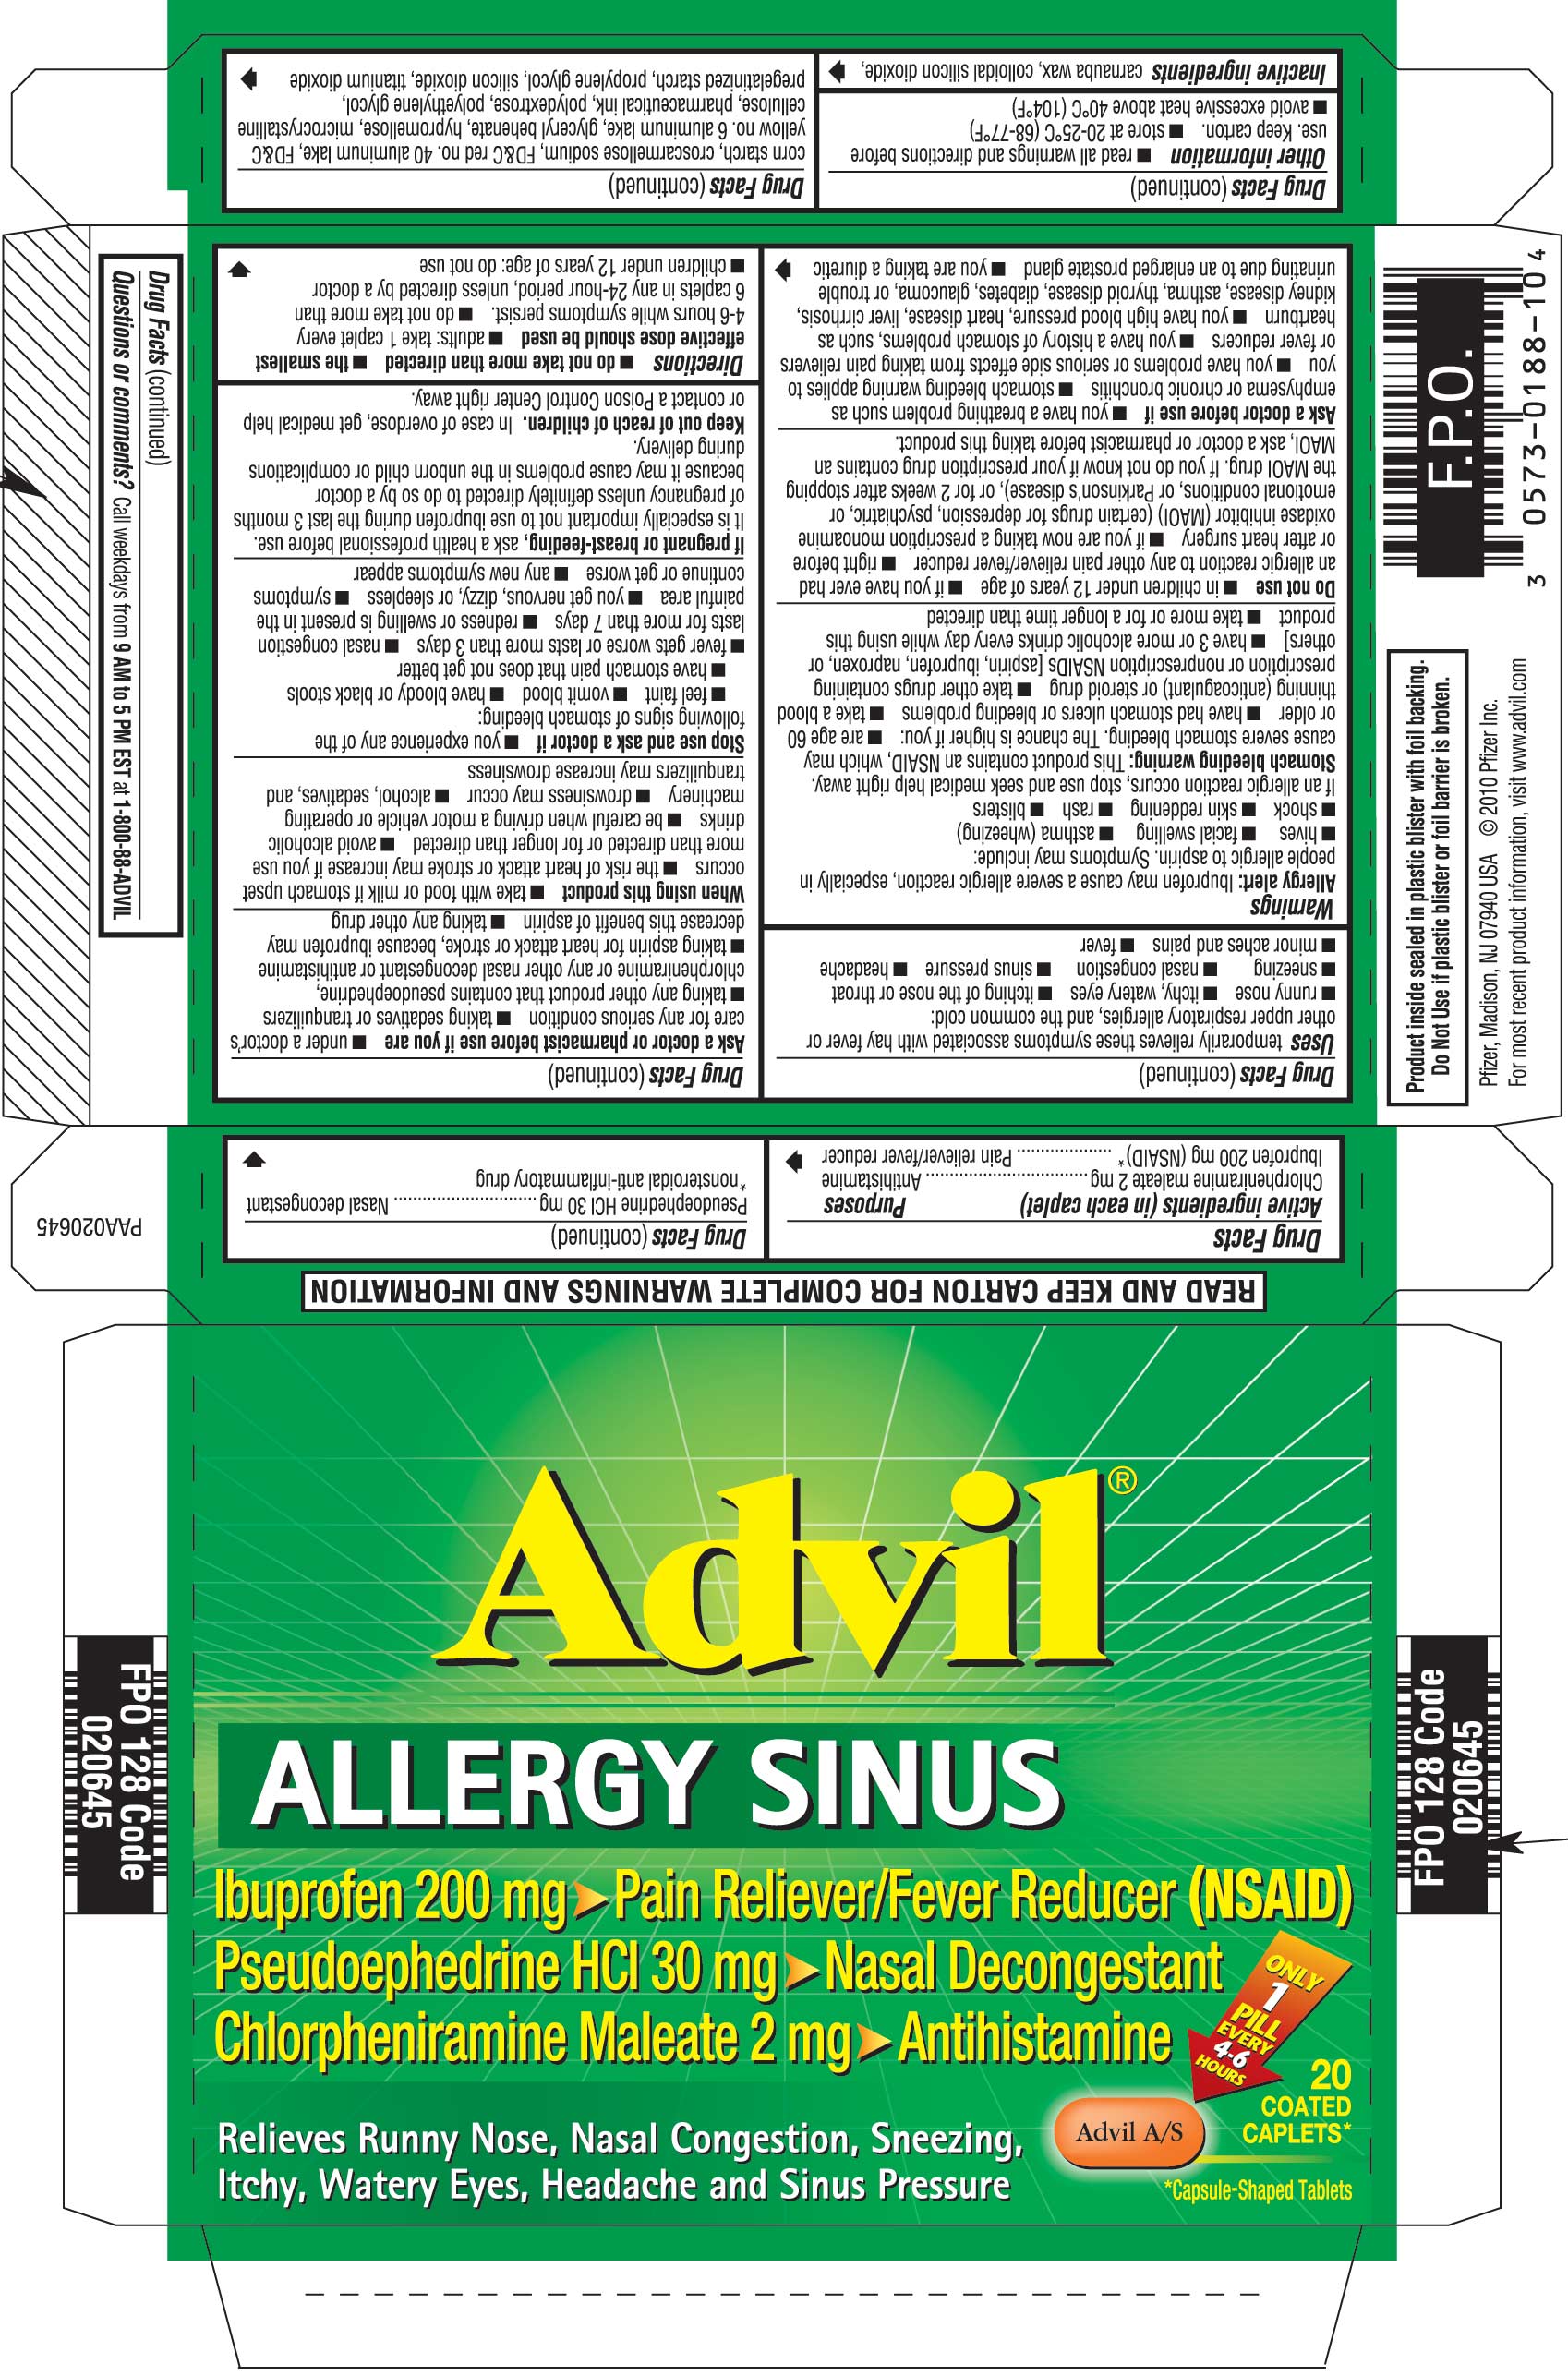 Advil Allergy Sinus Packaging